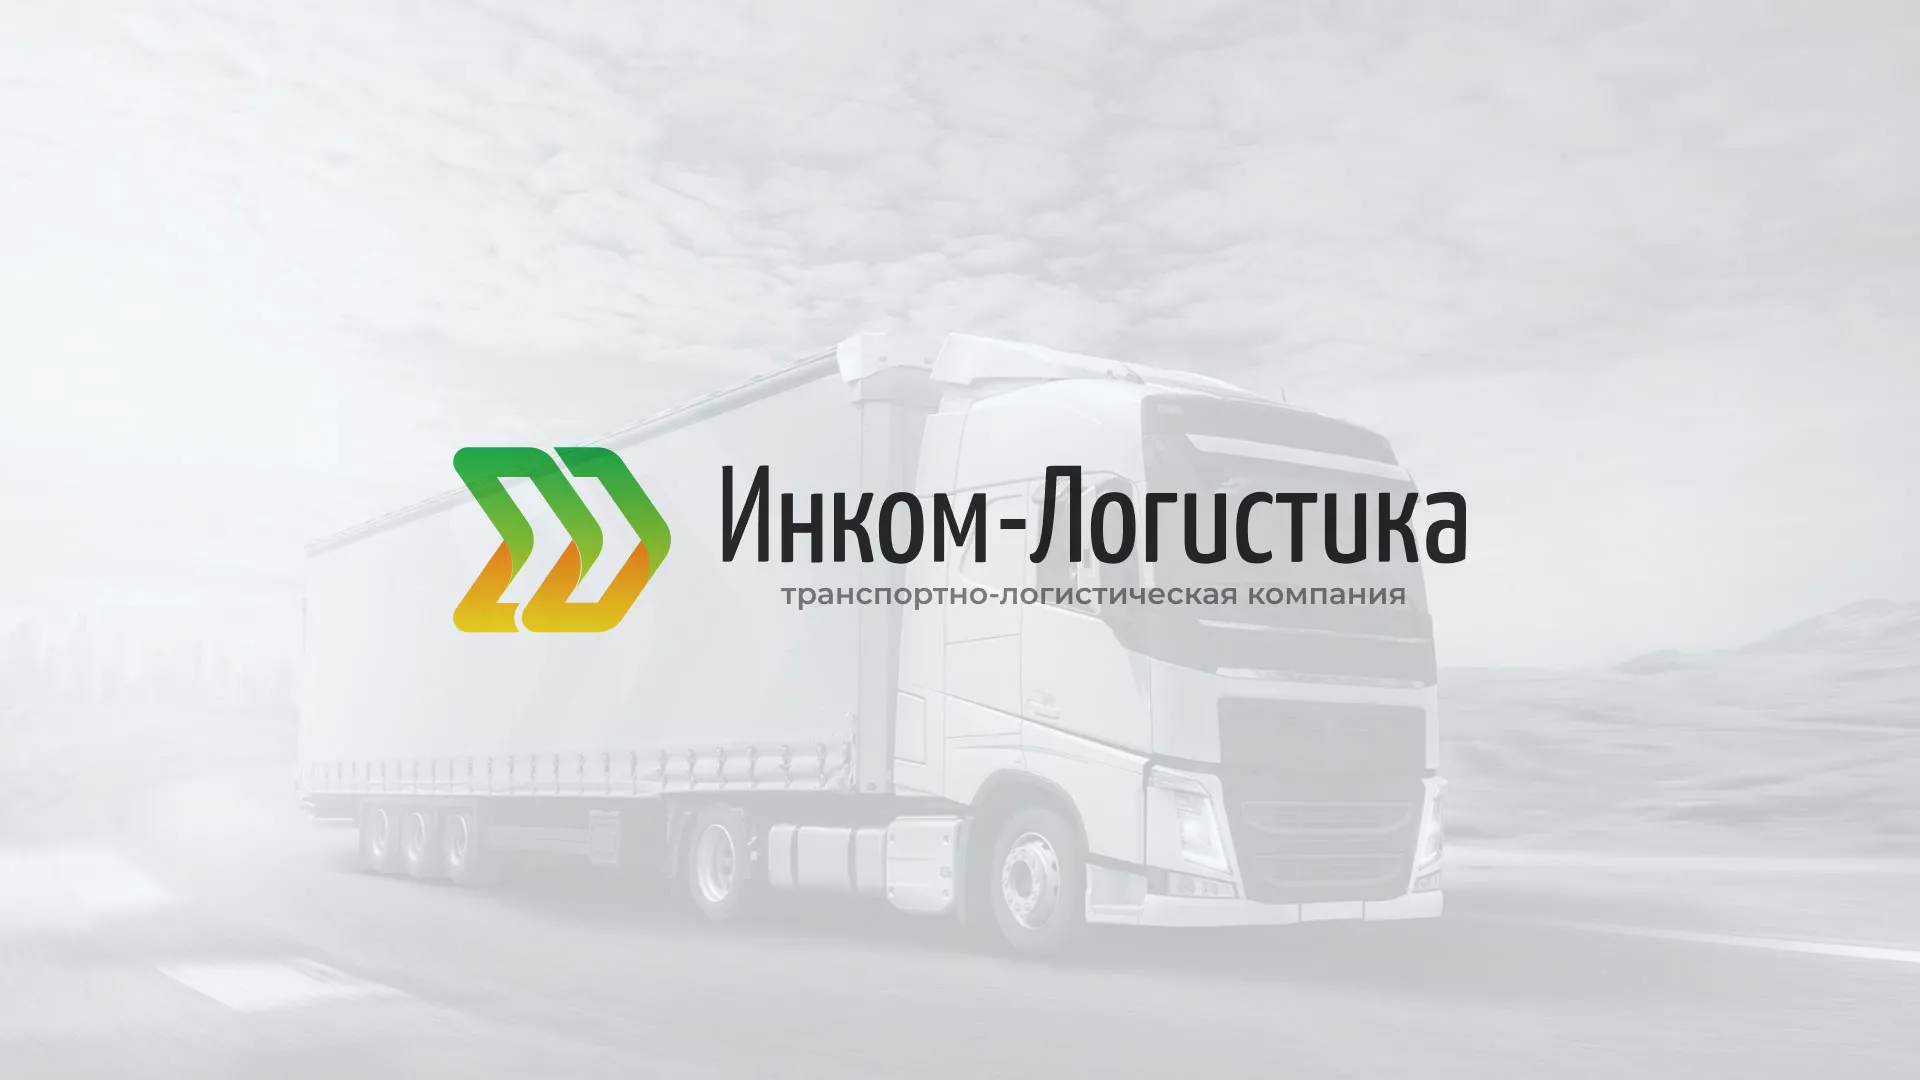 Разработка логотипа и сайта компании «Инком-Логистика» в Гороховце